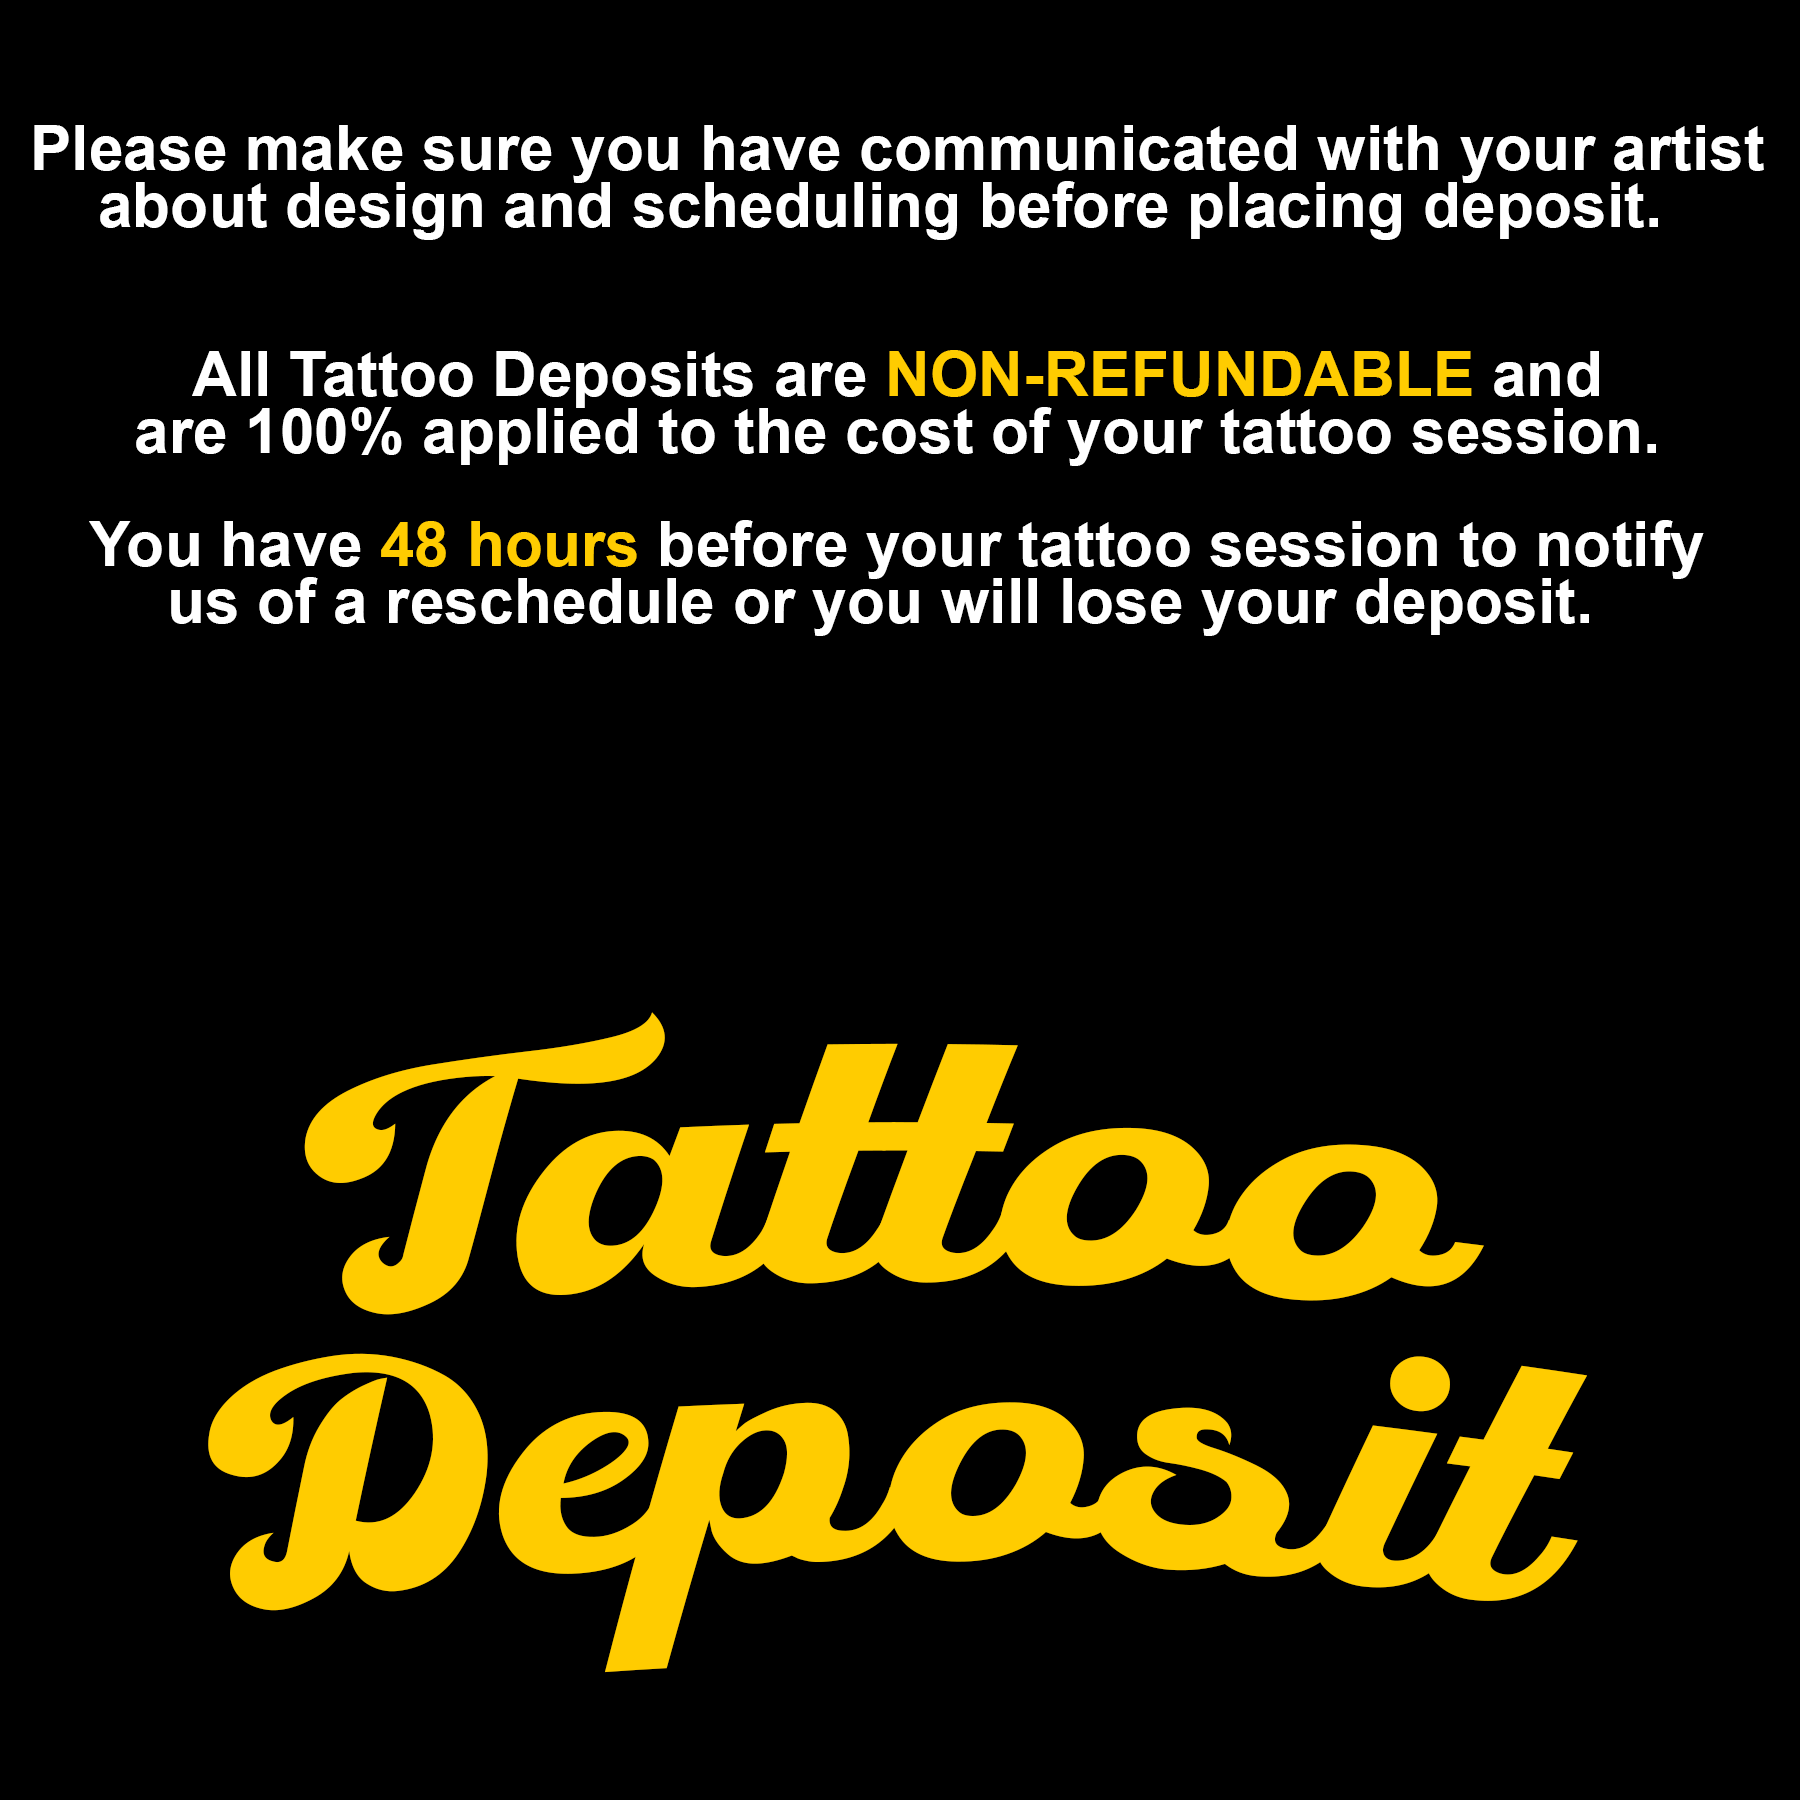 Rob Tattoo Deposit